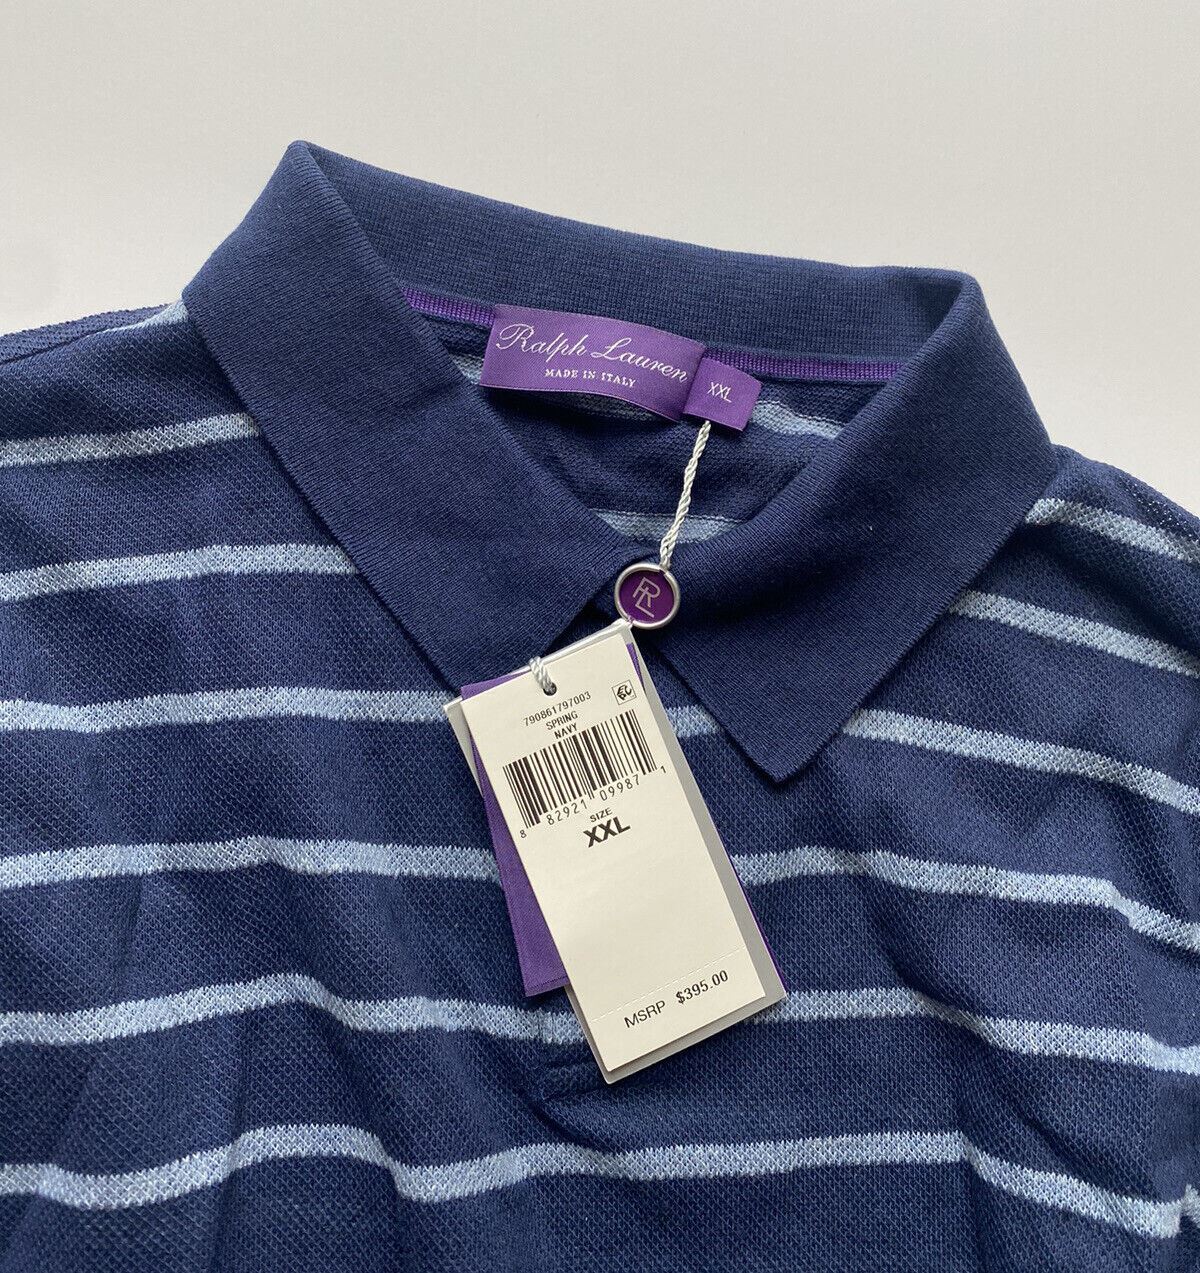 Neu mit Etikett: 395 $ Ralph Lauren Purple Label Custom Slim Fit Baumwoll-Leinen-Poloshirt 2XL